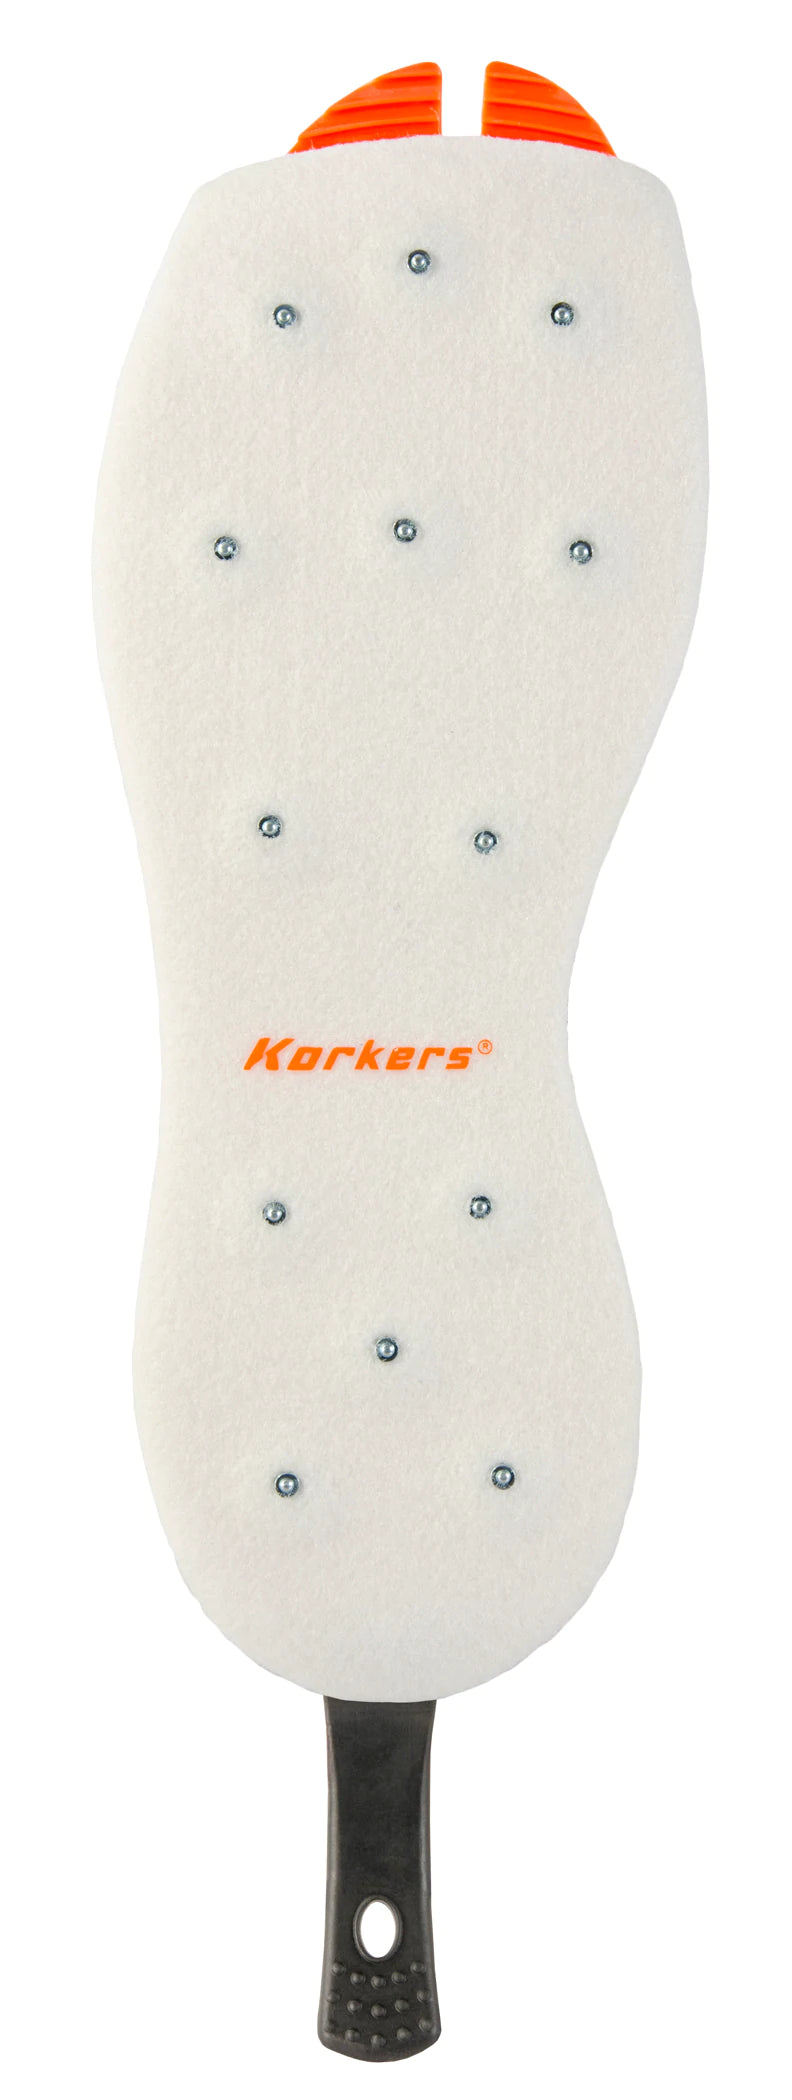 Korkers OmniTrax v3.0 Interchangeable Sole - Studded Felt - White/Orange